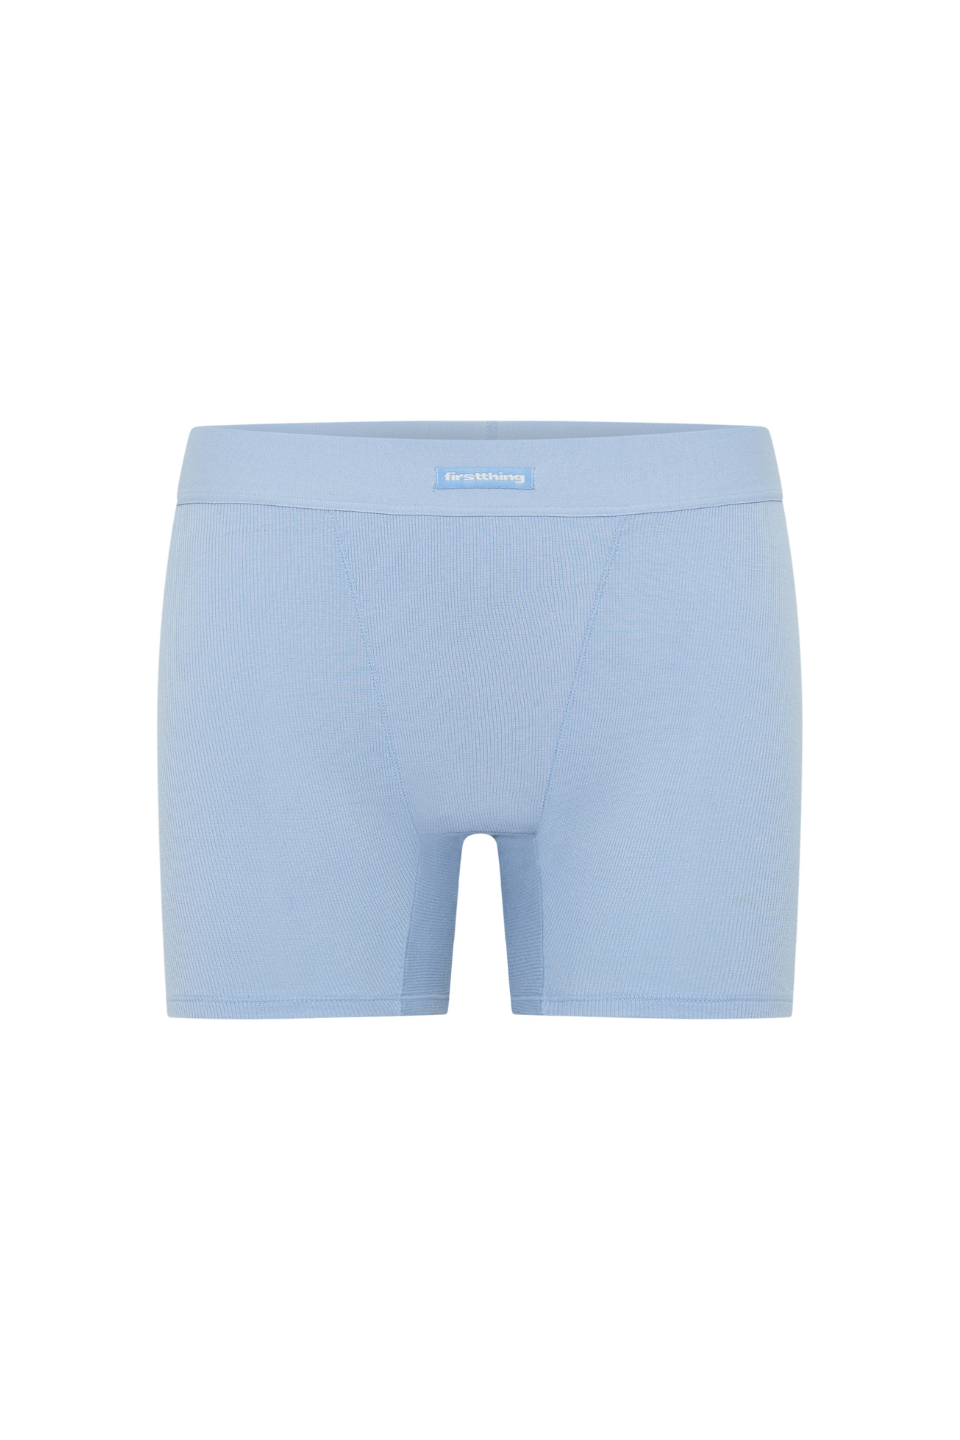 Summer Sleep Set - Sky Blue, Bundle - First Thing Underwear